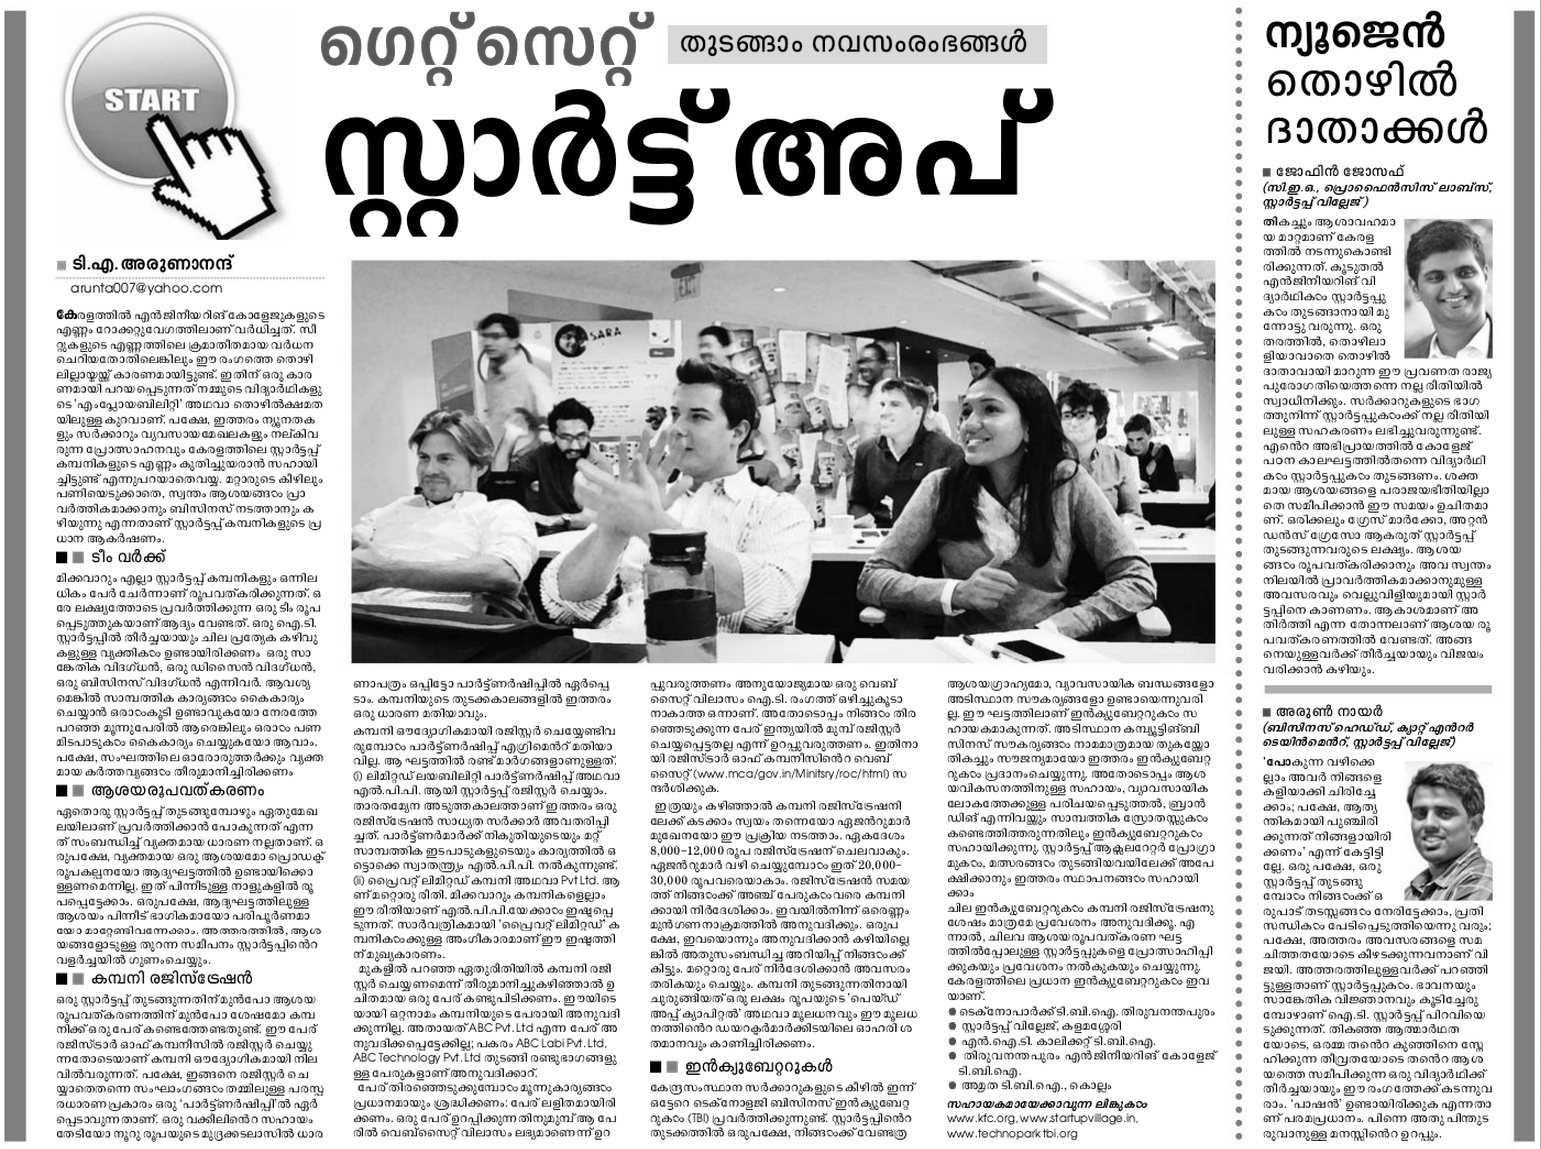 Startup - Article - Mathrubhumi_19-Mar-2014_Arunanand T A